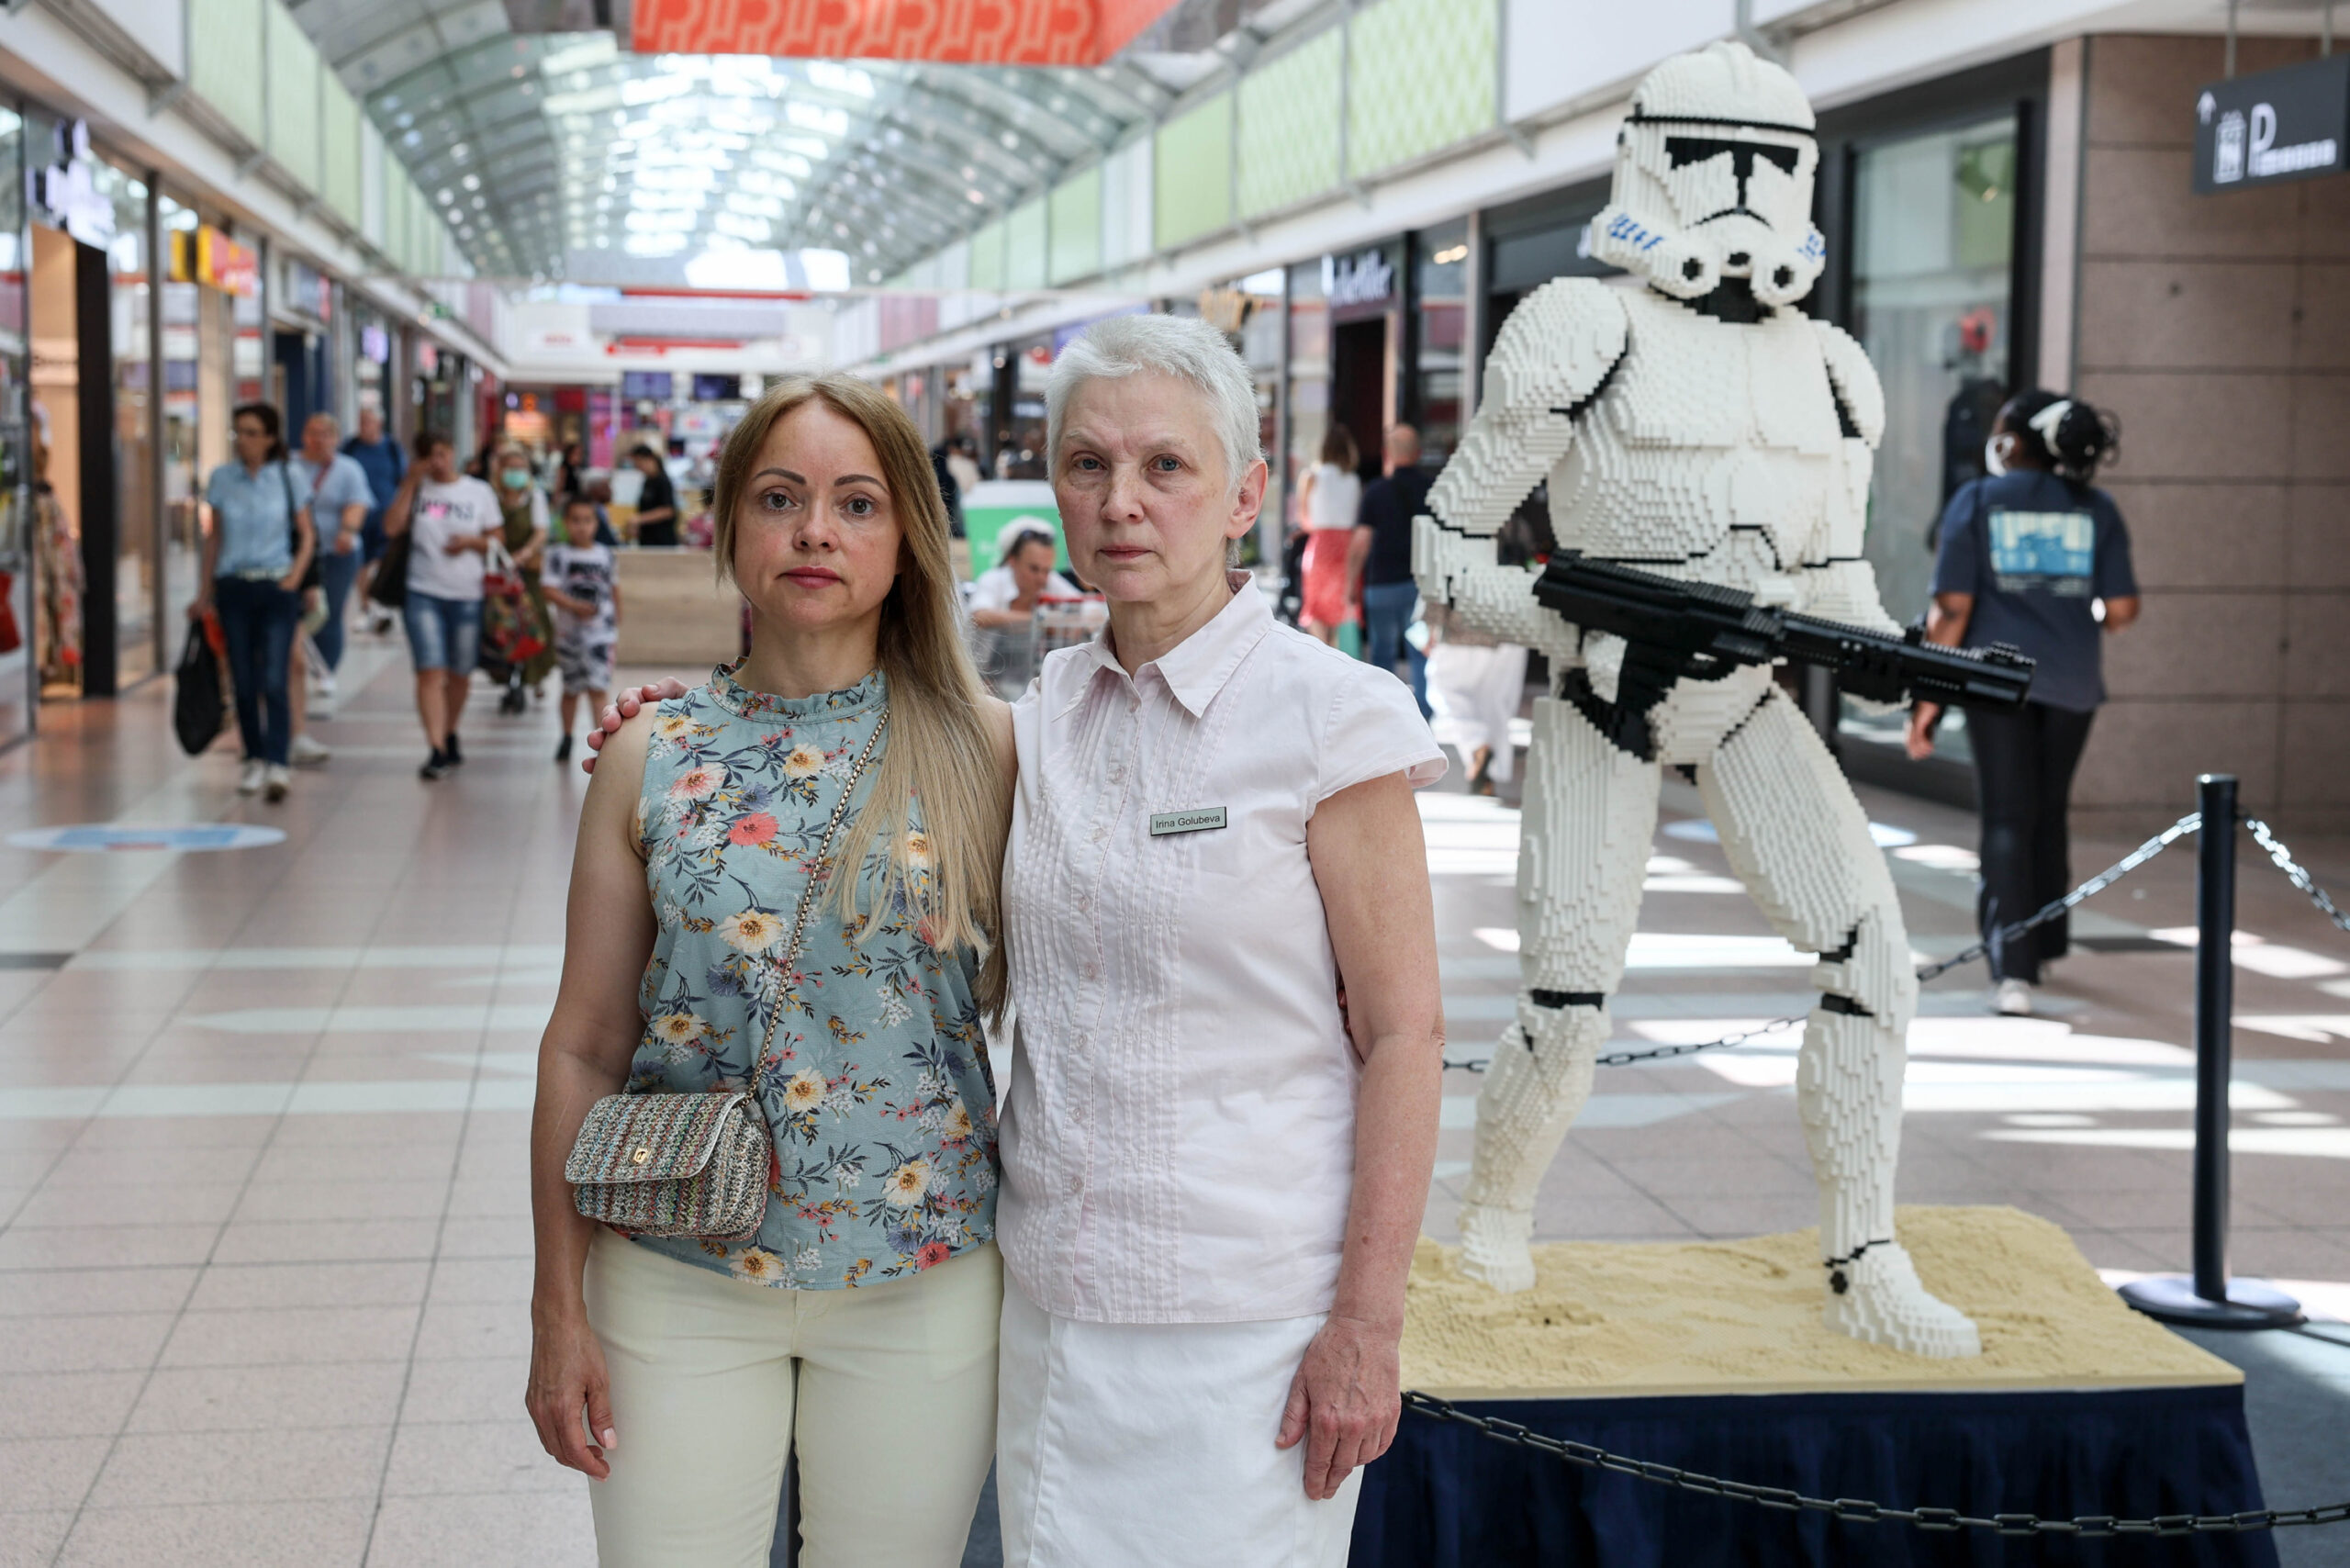 Frauenärztin Irina Golubeva (l) und Tatjana Martinova wollen, dass der Klonkrieger mit Waffe vor dem Praxis-Eingang verschwindet.